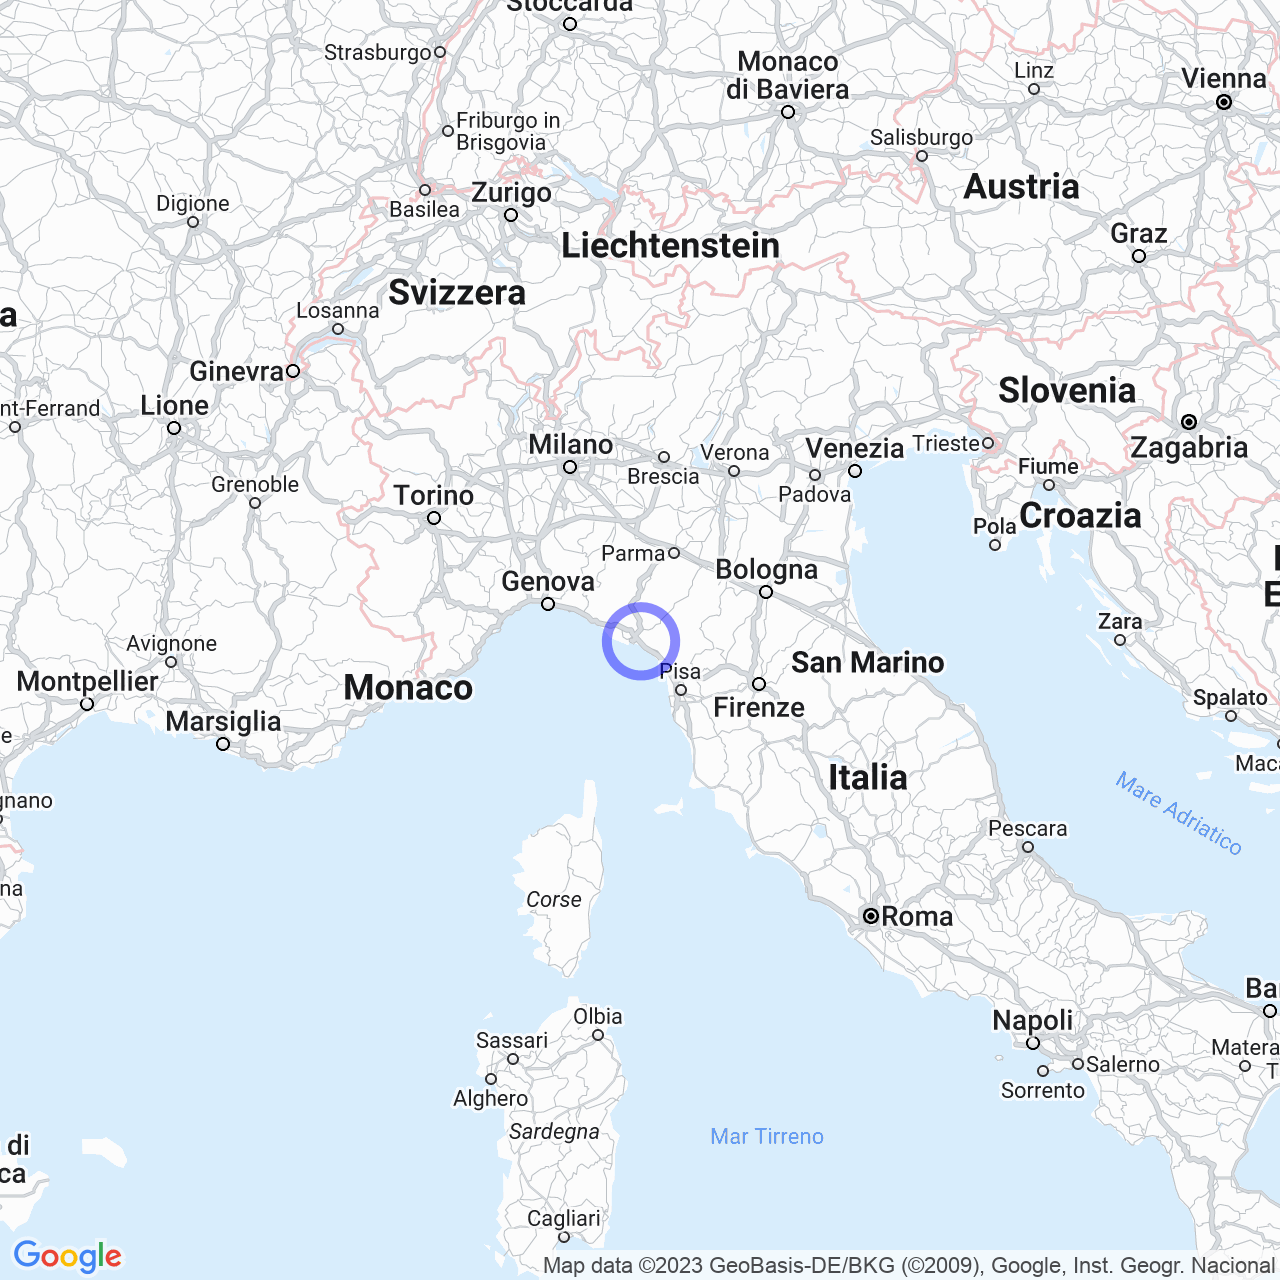 The Diocese of La Spezia-Sarzana-Brugnato: History, Territory, and Parishes.